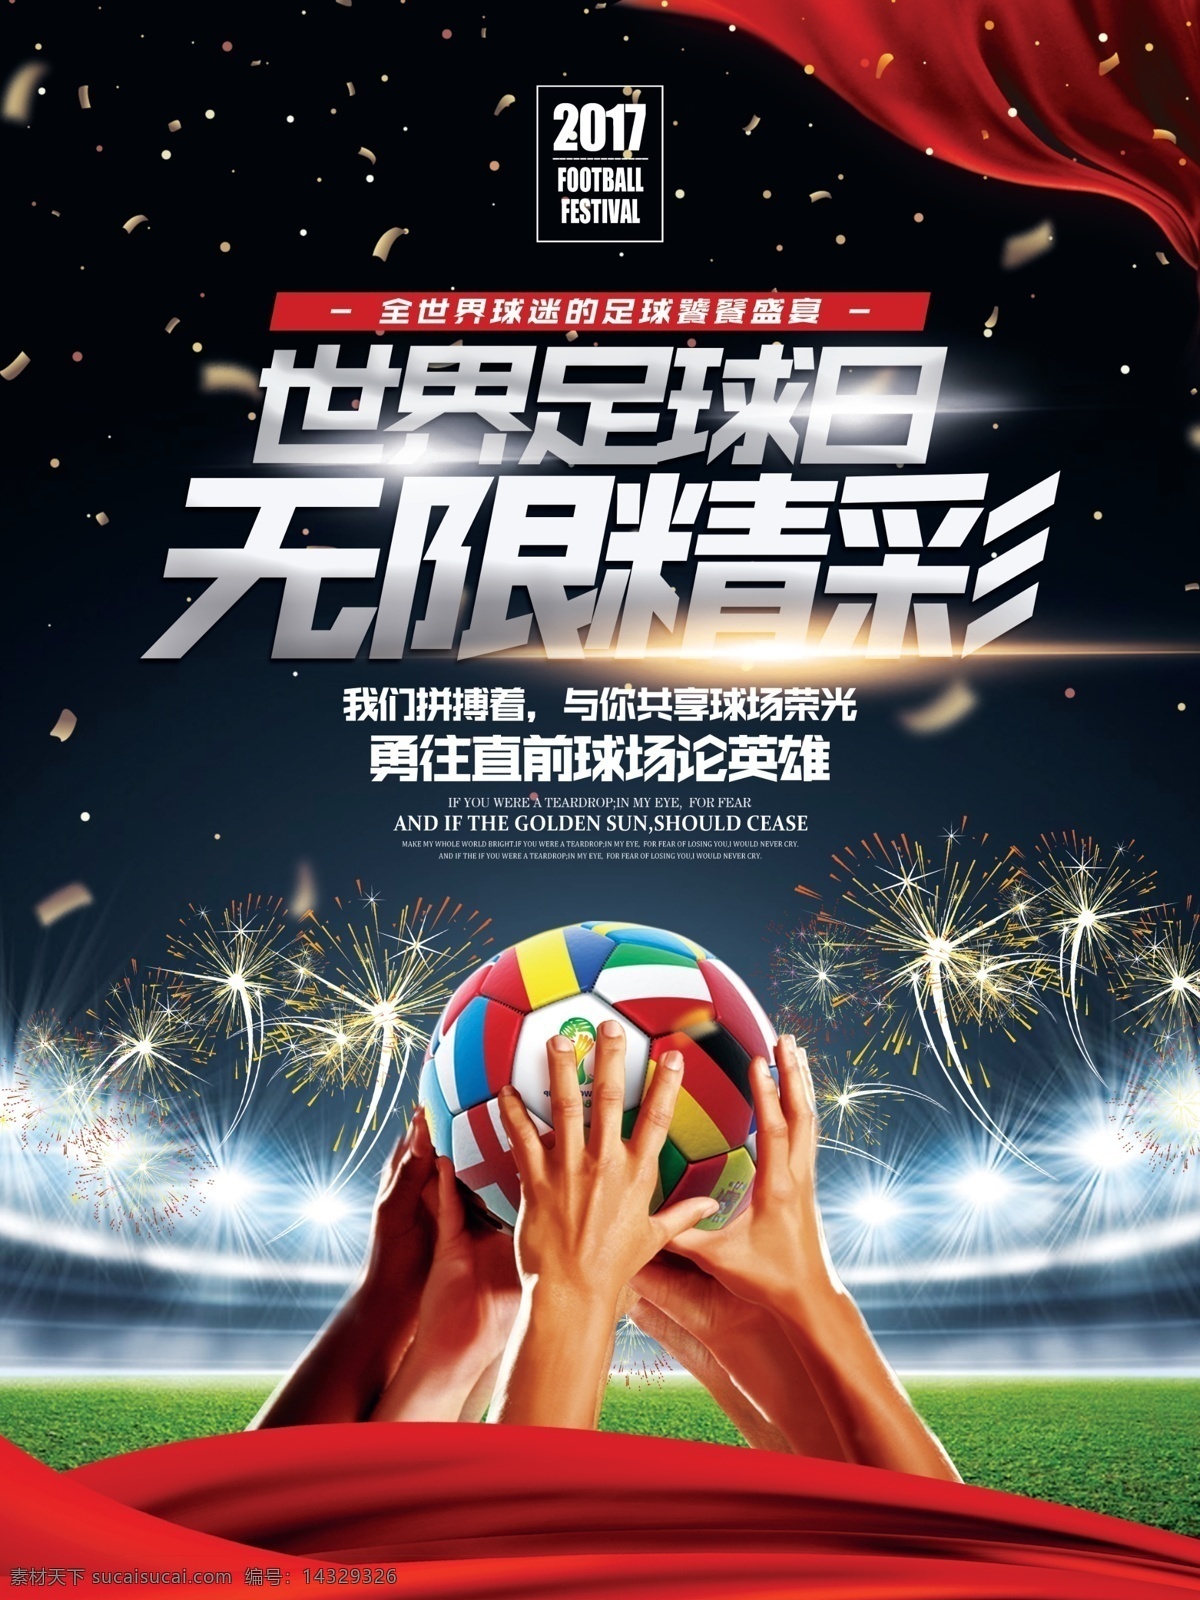 时尚 酷 炫 世界 足球 日 体育 主题 宣传海报 展板 大气 酷炫 足球日 竞技 比赛 宣传 海报